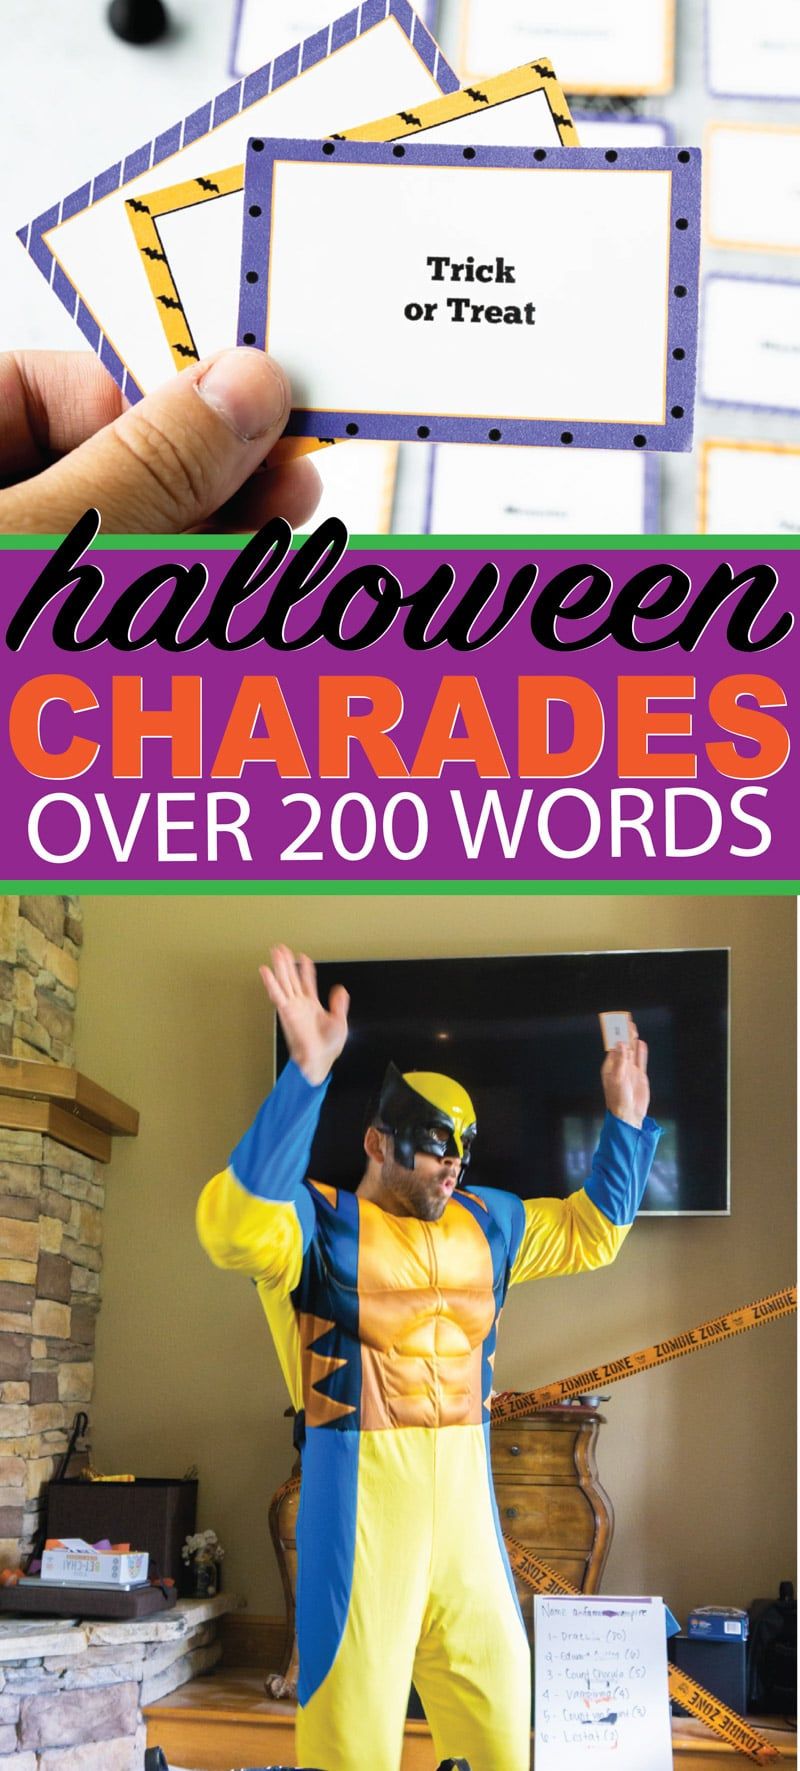 Tisknutelný seznam slov Halloweenských šarád pro děti i dospělé! Více než 100 různých slov s tematikou Halloweenu, která lze snadno uhodnout a která jsou zábavná! Všechno od halloweenských filmů až po běžná slova na večírku ve třídě!